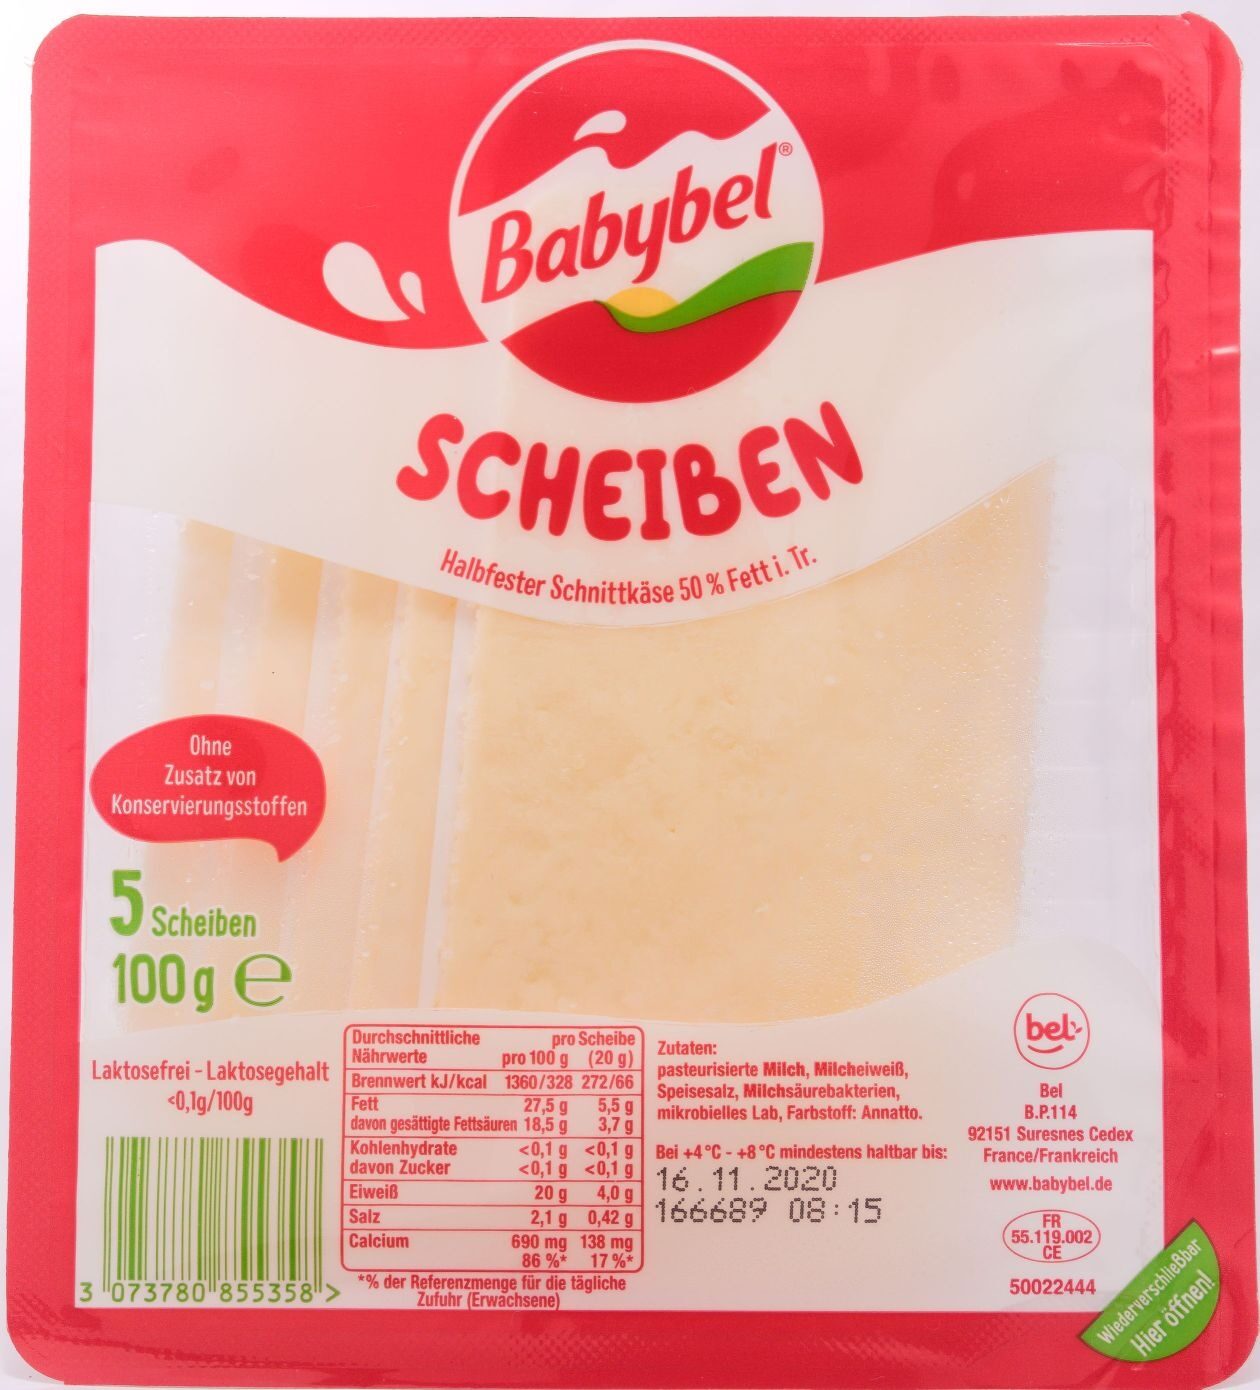 Babybel Scheiben - Product - de